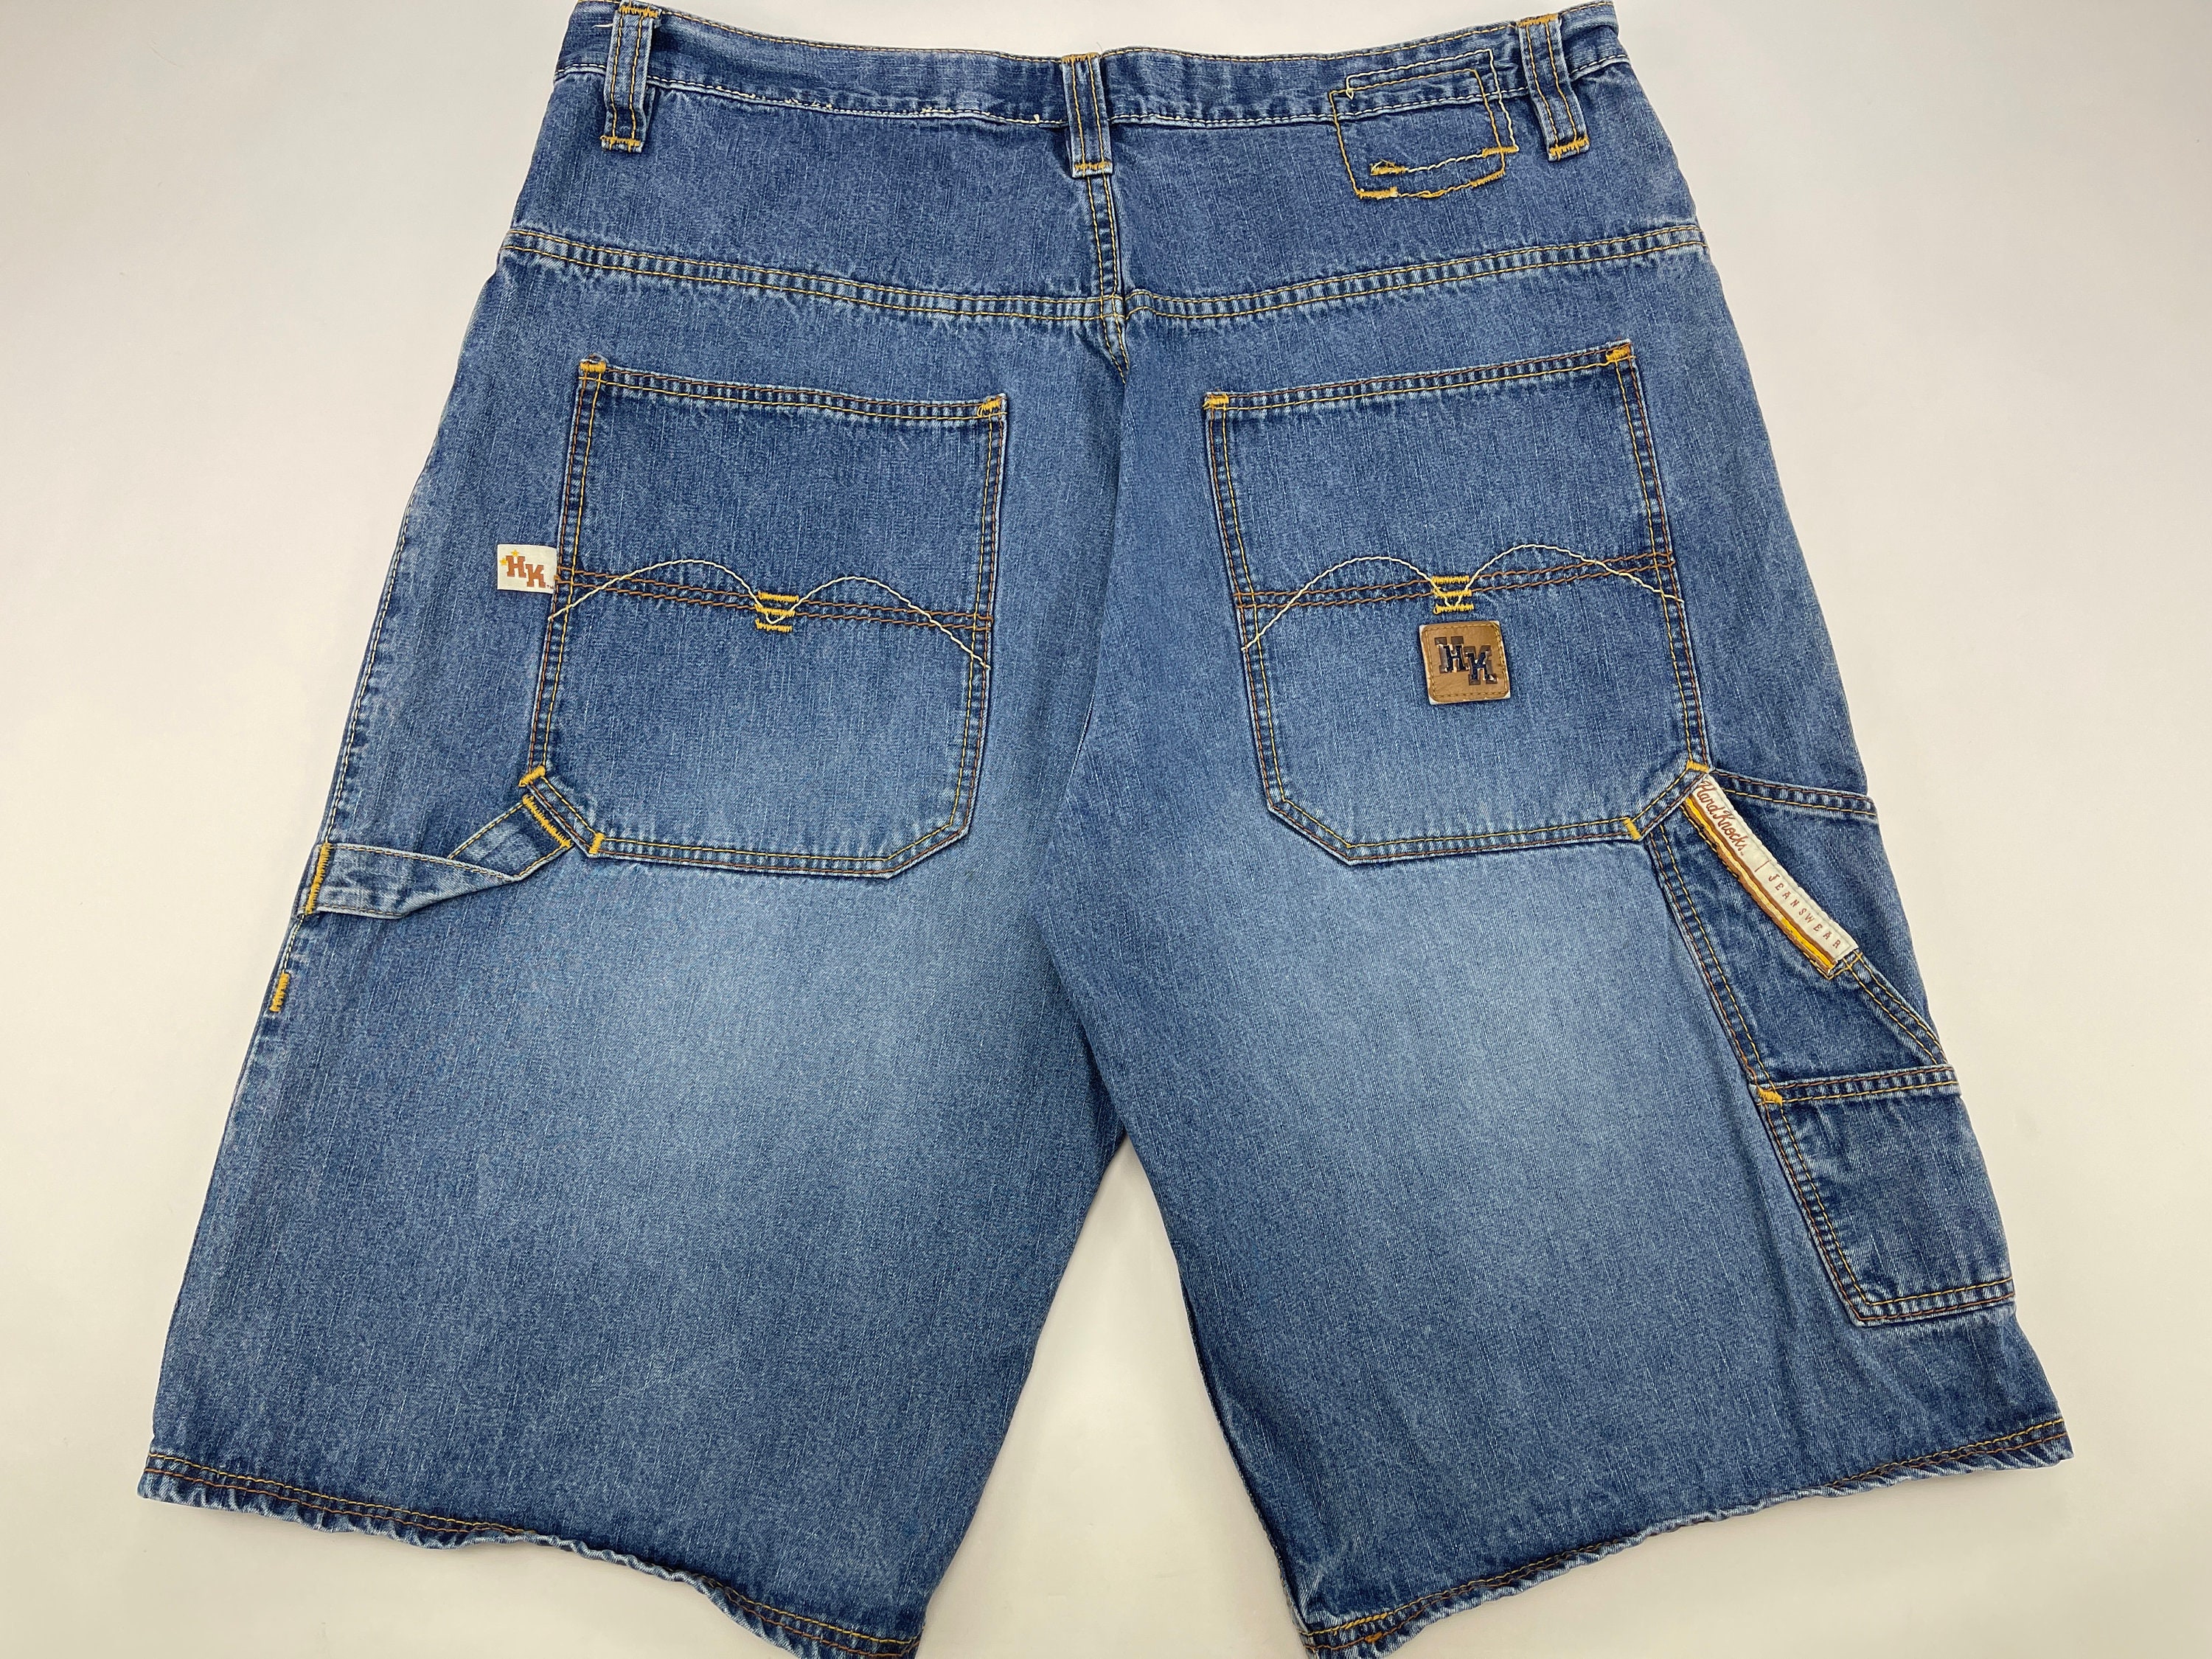 SOHK shorts School of Hard Knocks jeans vintage denim | Etsy